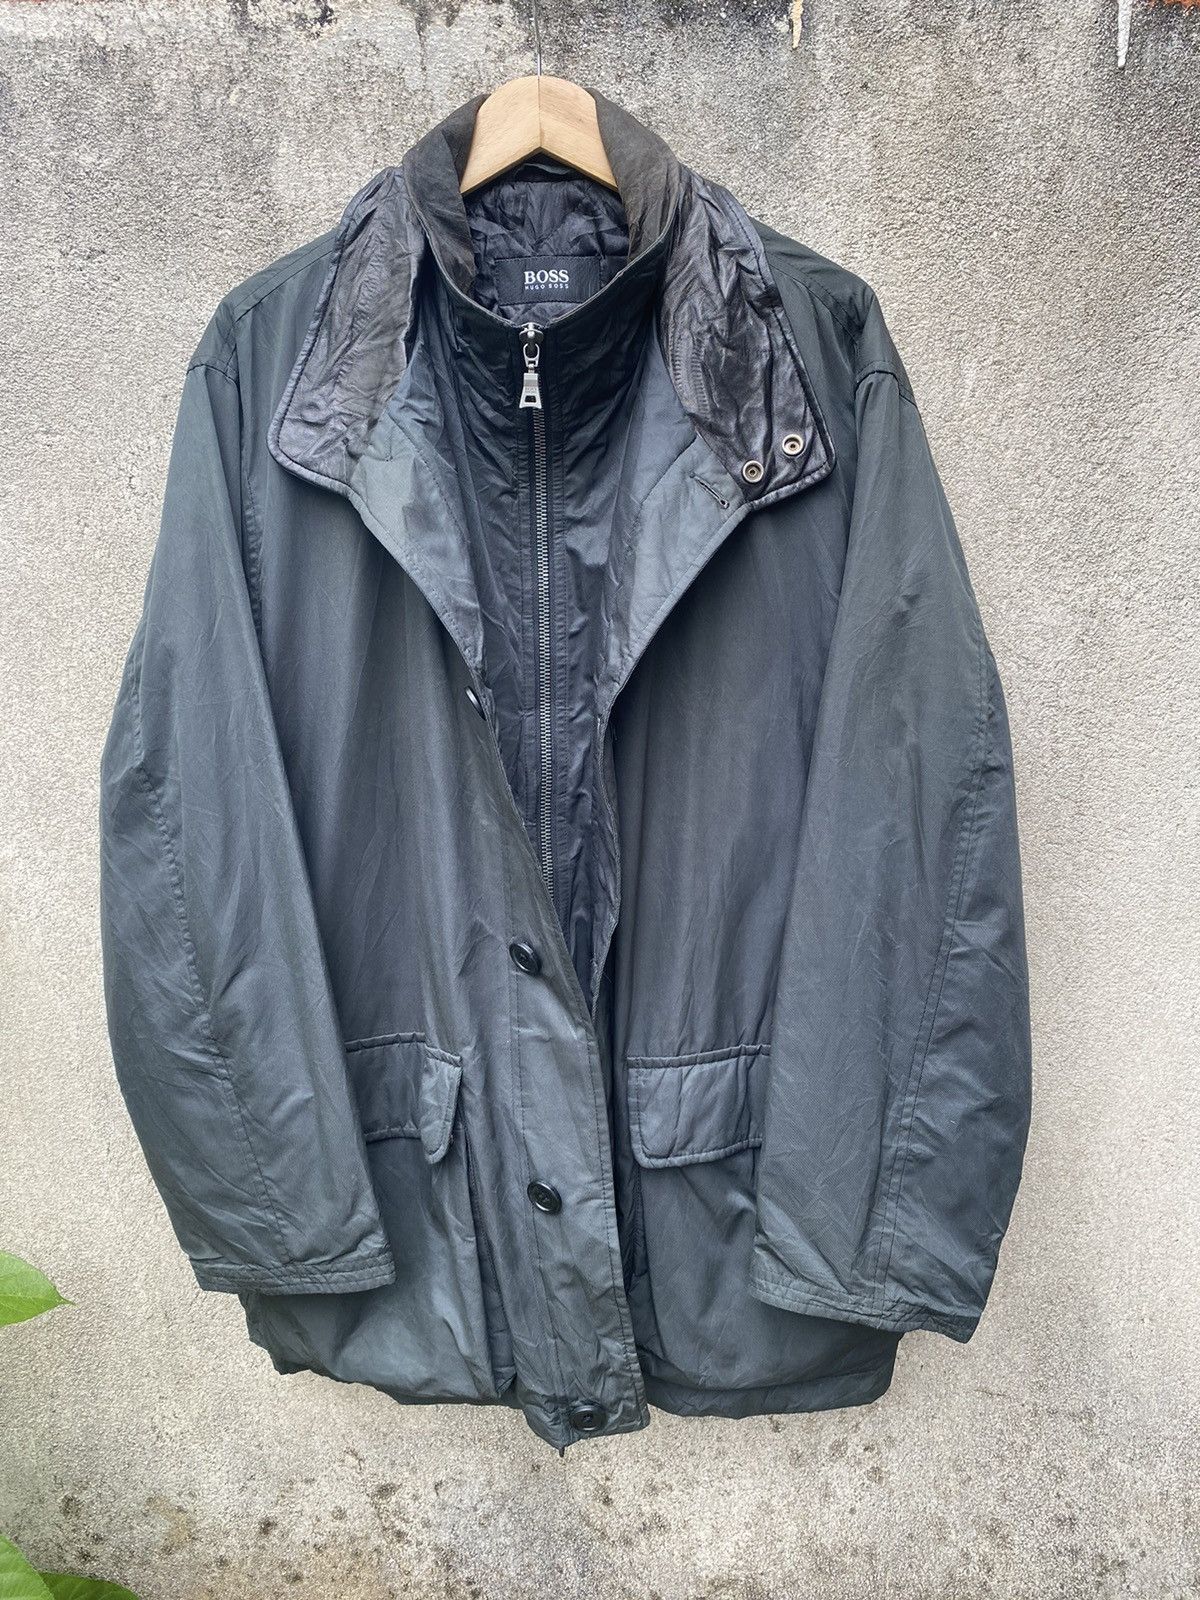 Hugo Boss Waxed Long Island Jacket Double Collar Leather - 4